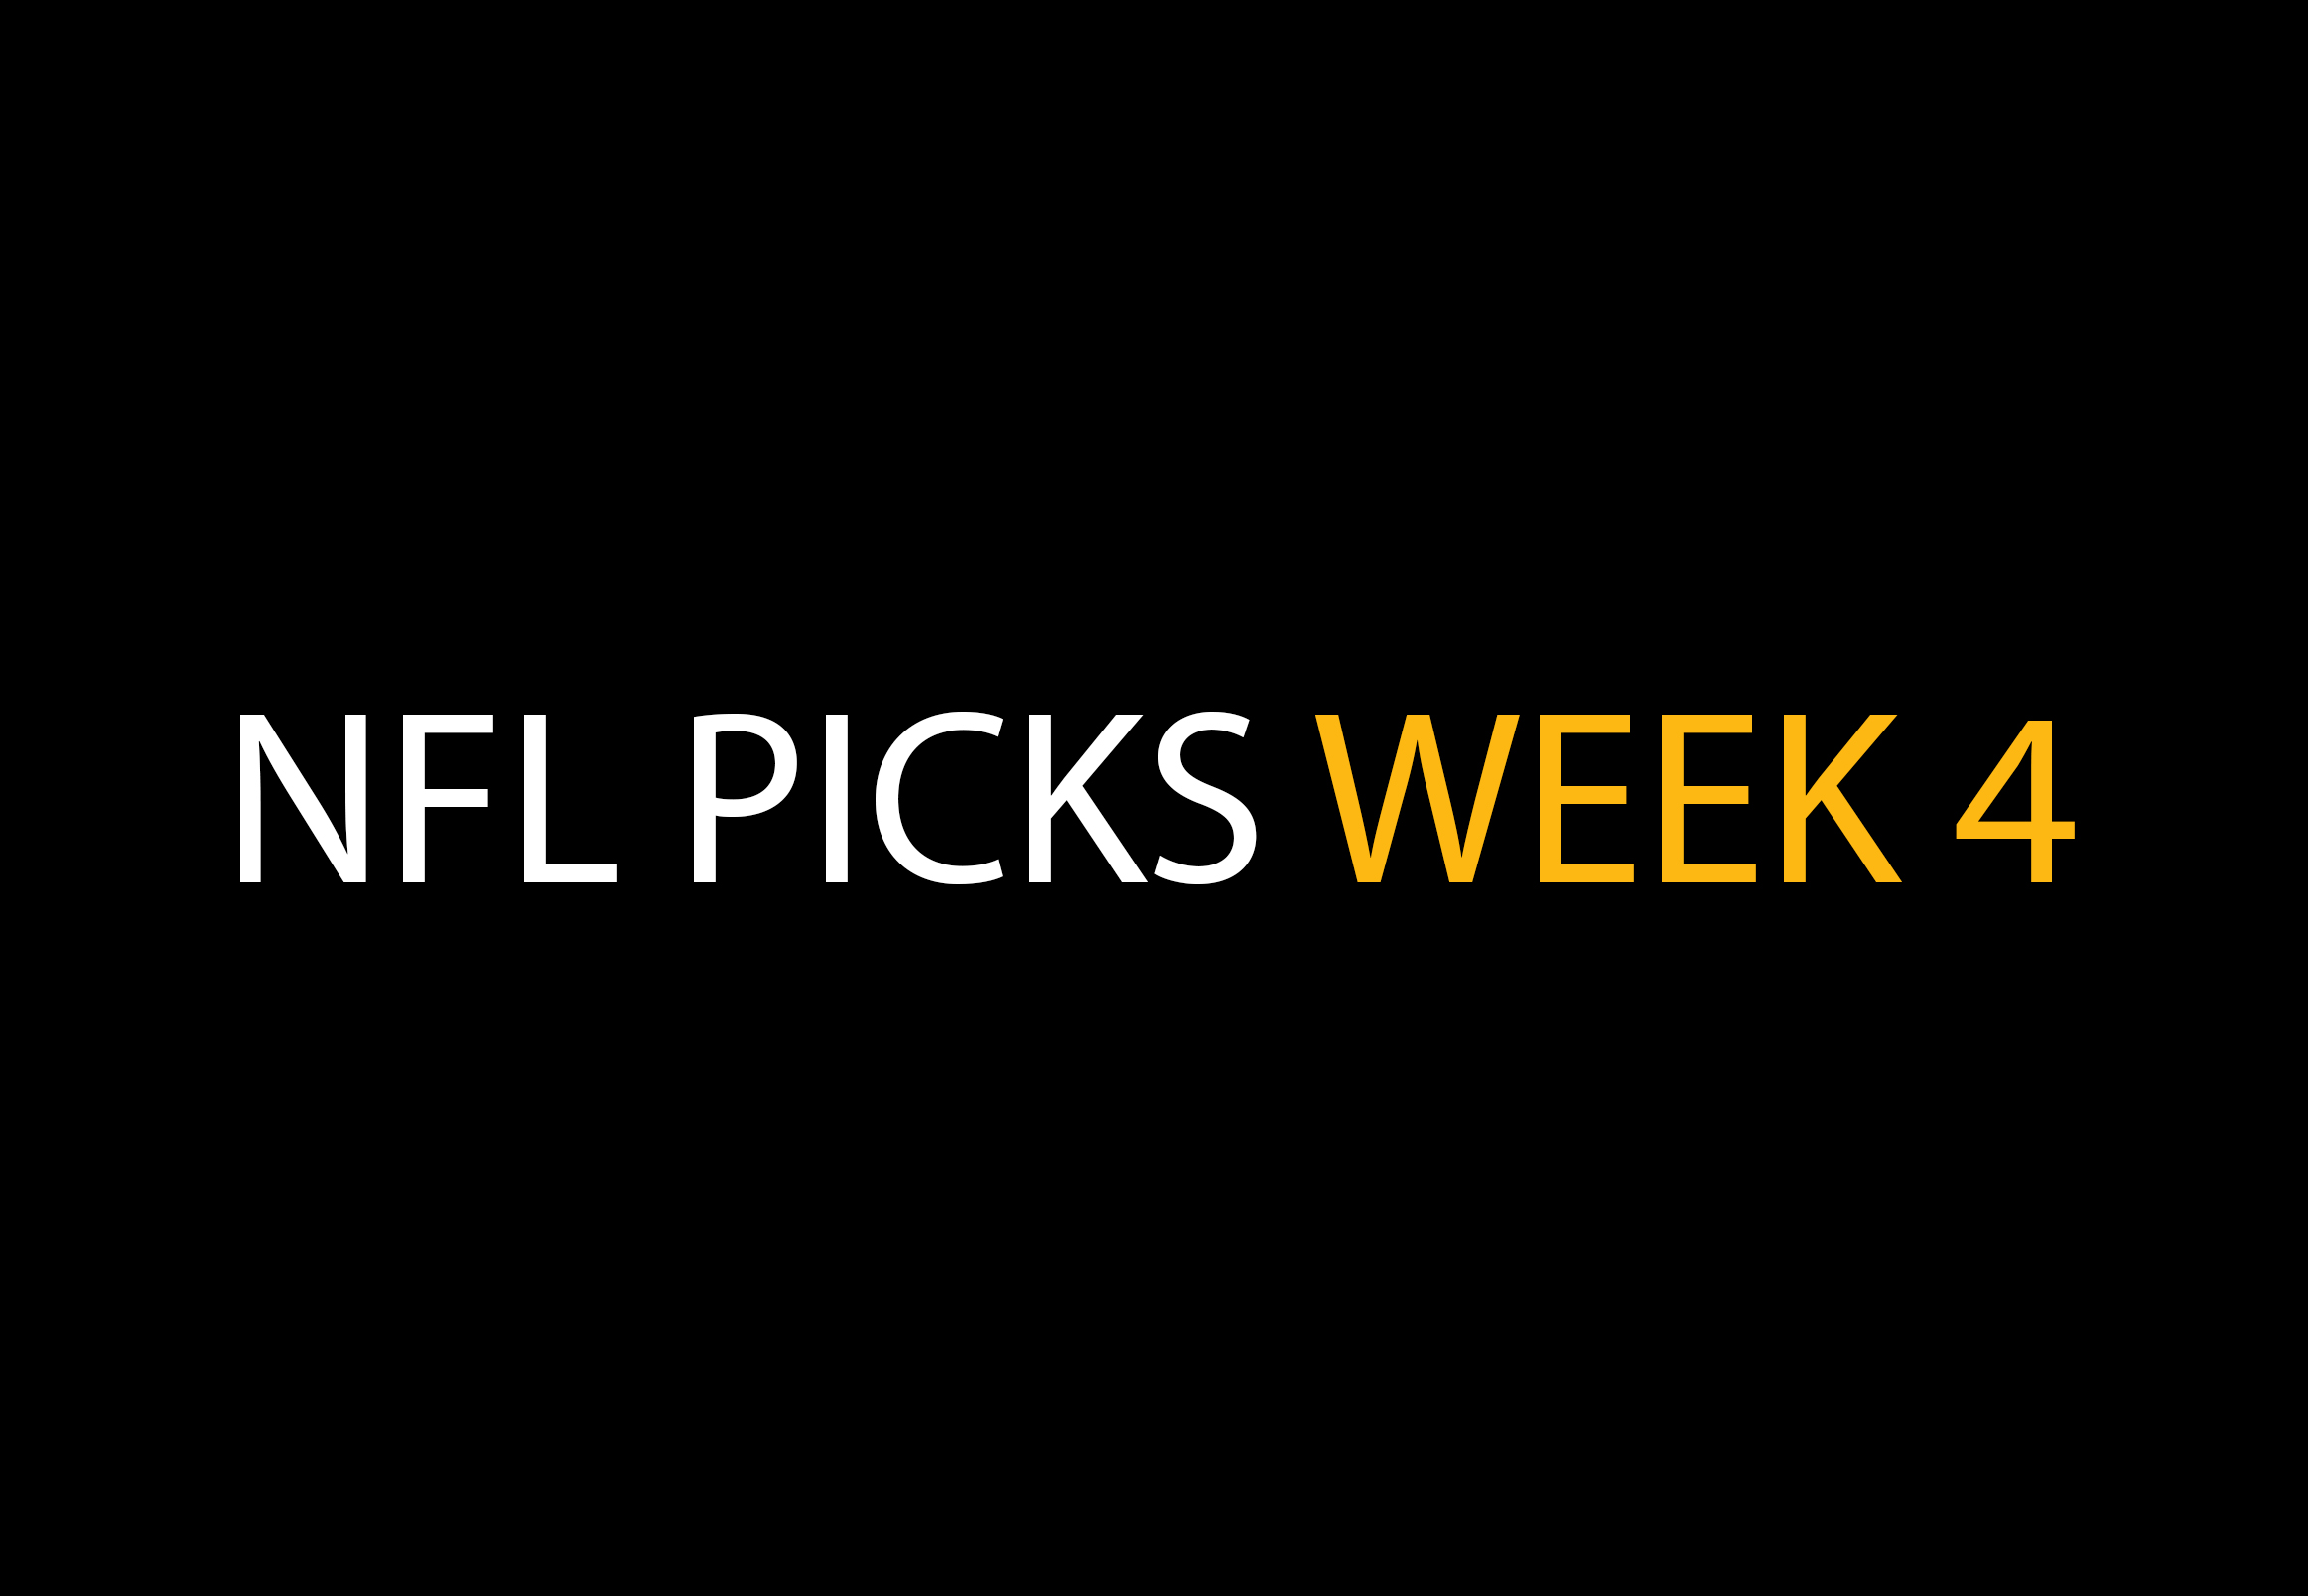 NFL Week 4 Picks